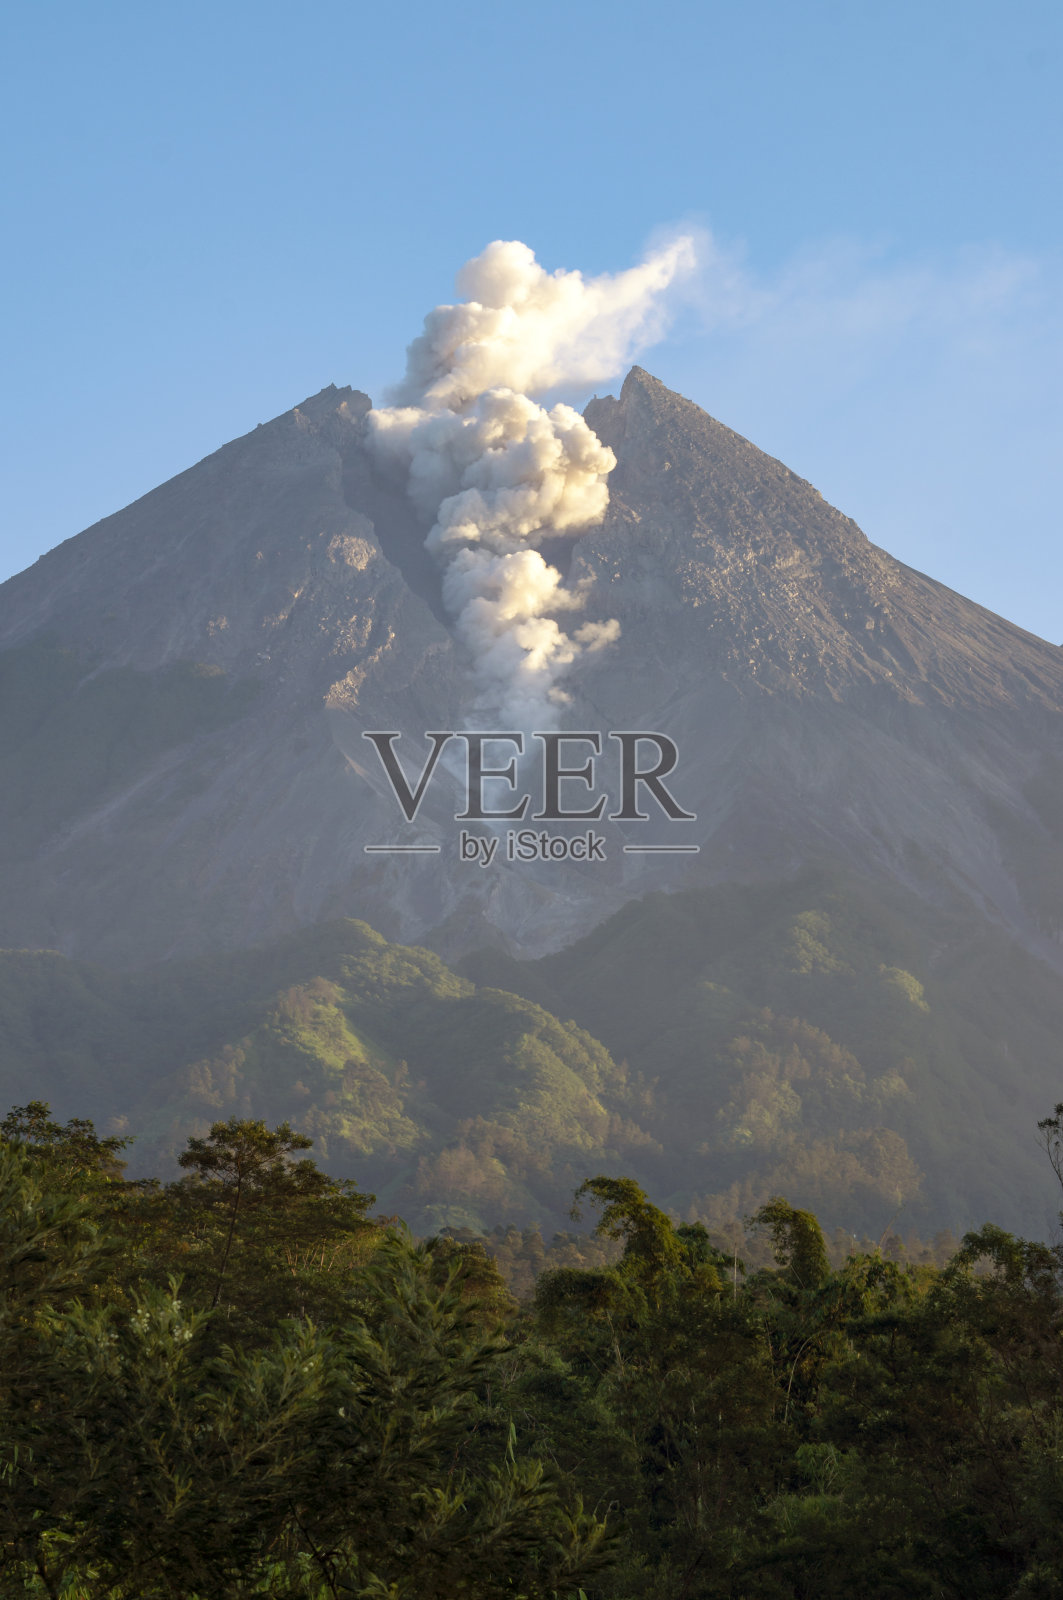 印度尼西亚默拉皮火山火山碎屑喷发照片摄影图片